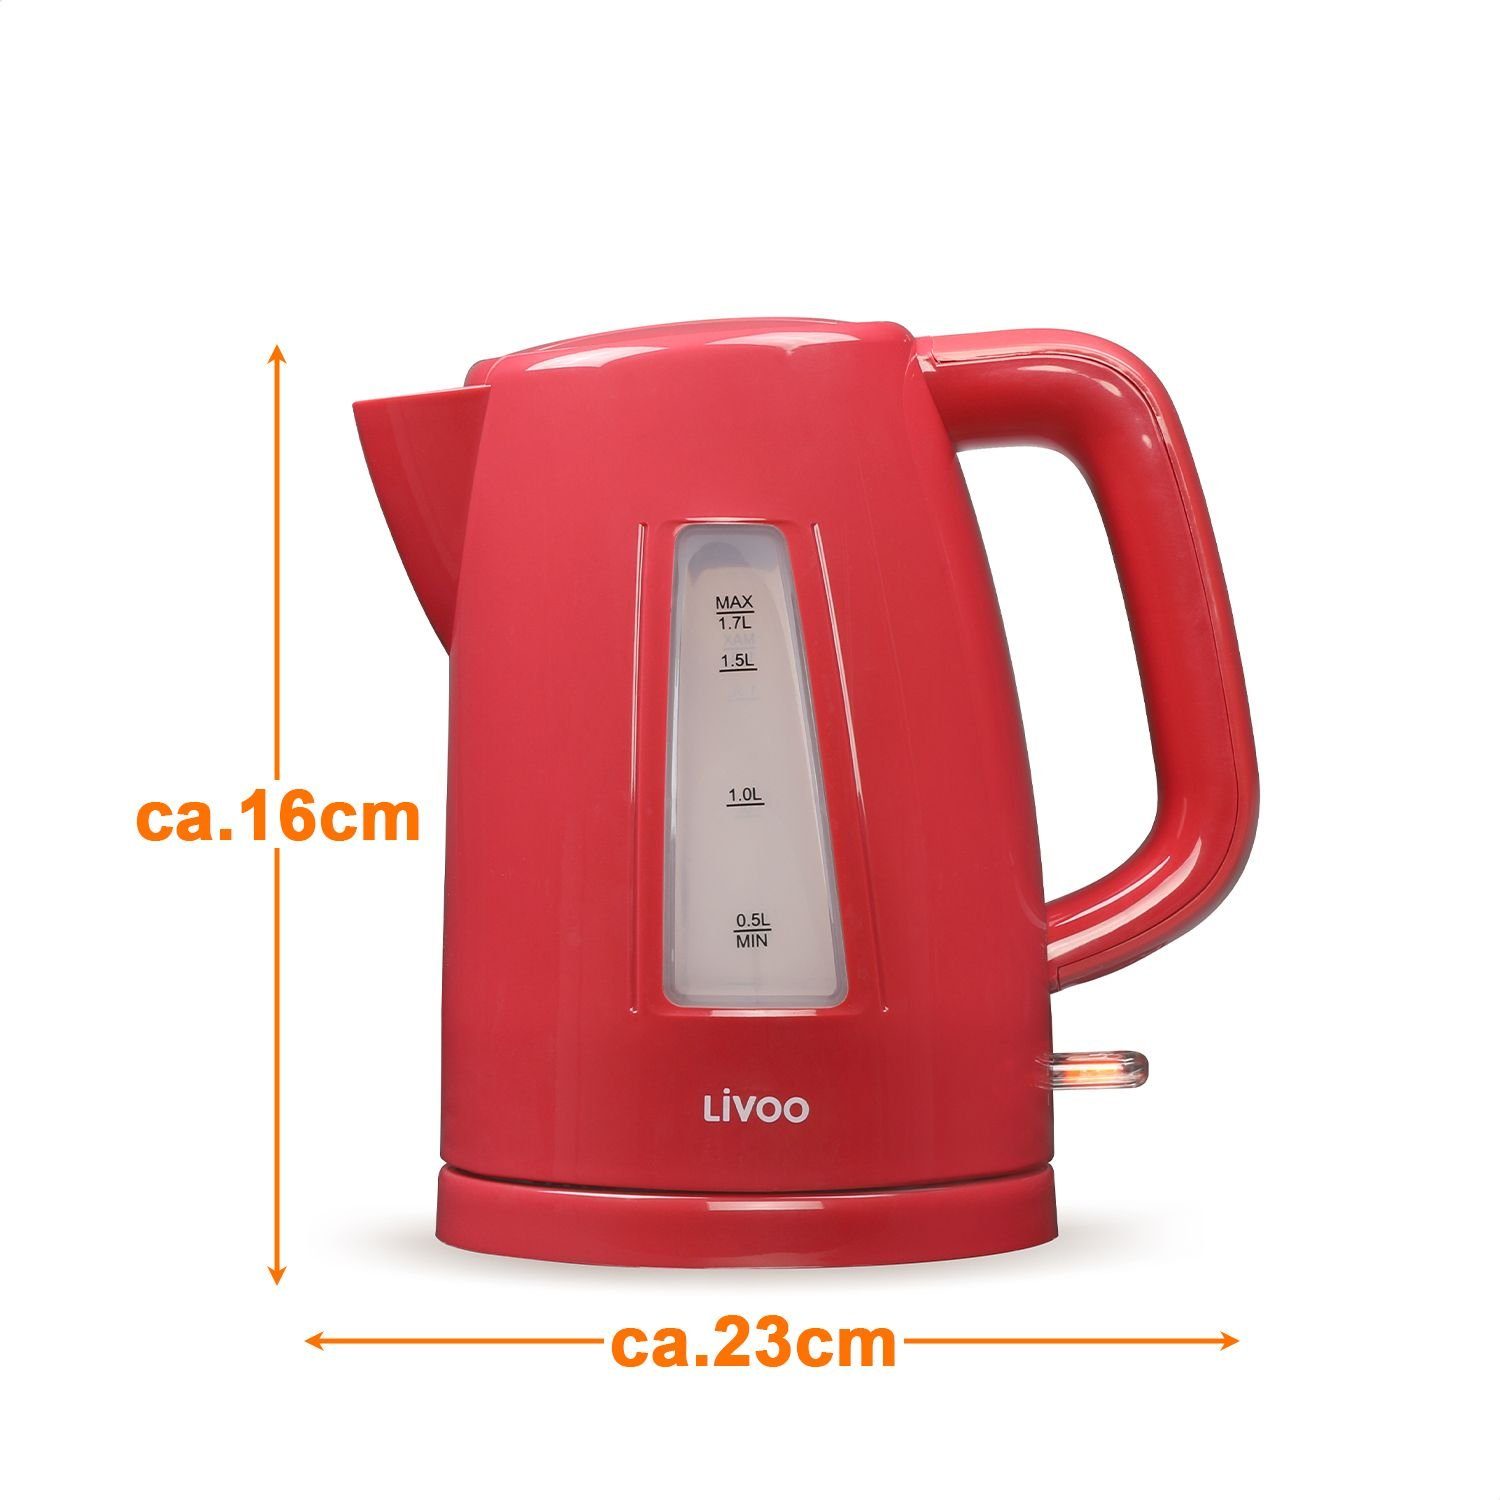 Filter LIVOO Basis Füllstandsanzeige Wasserkocher Wasserkocher 360° LIVOO rot DOD184R